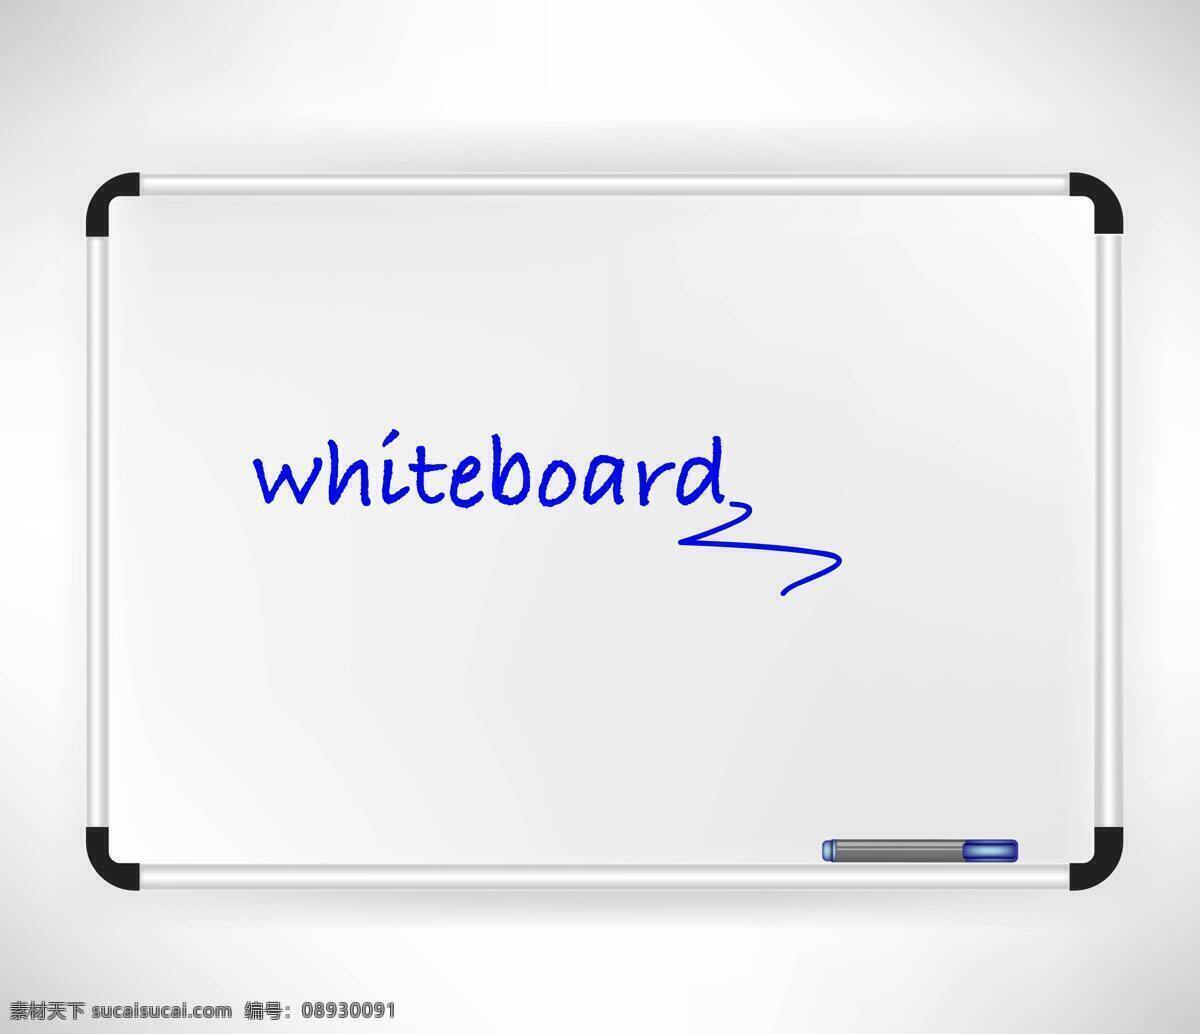 精美 白板 白板笔 矢量 会议 架 矢量素材 展示面板 水性笔 矢量图 其他矢量图